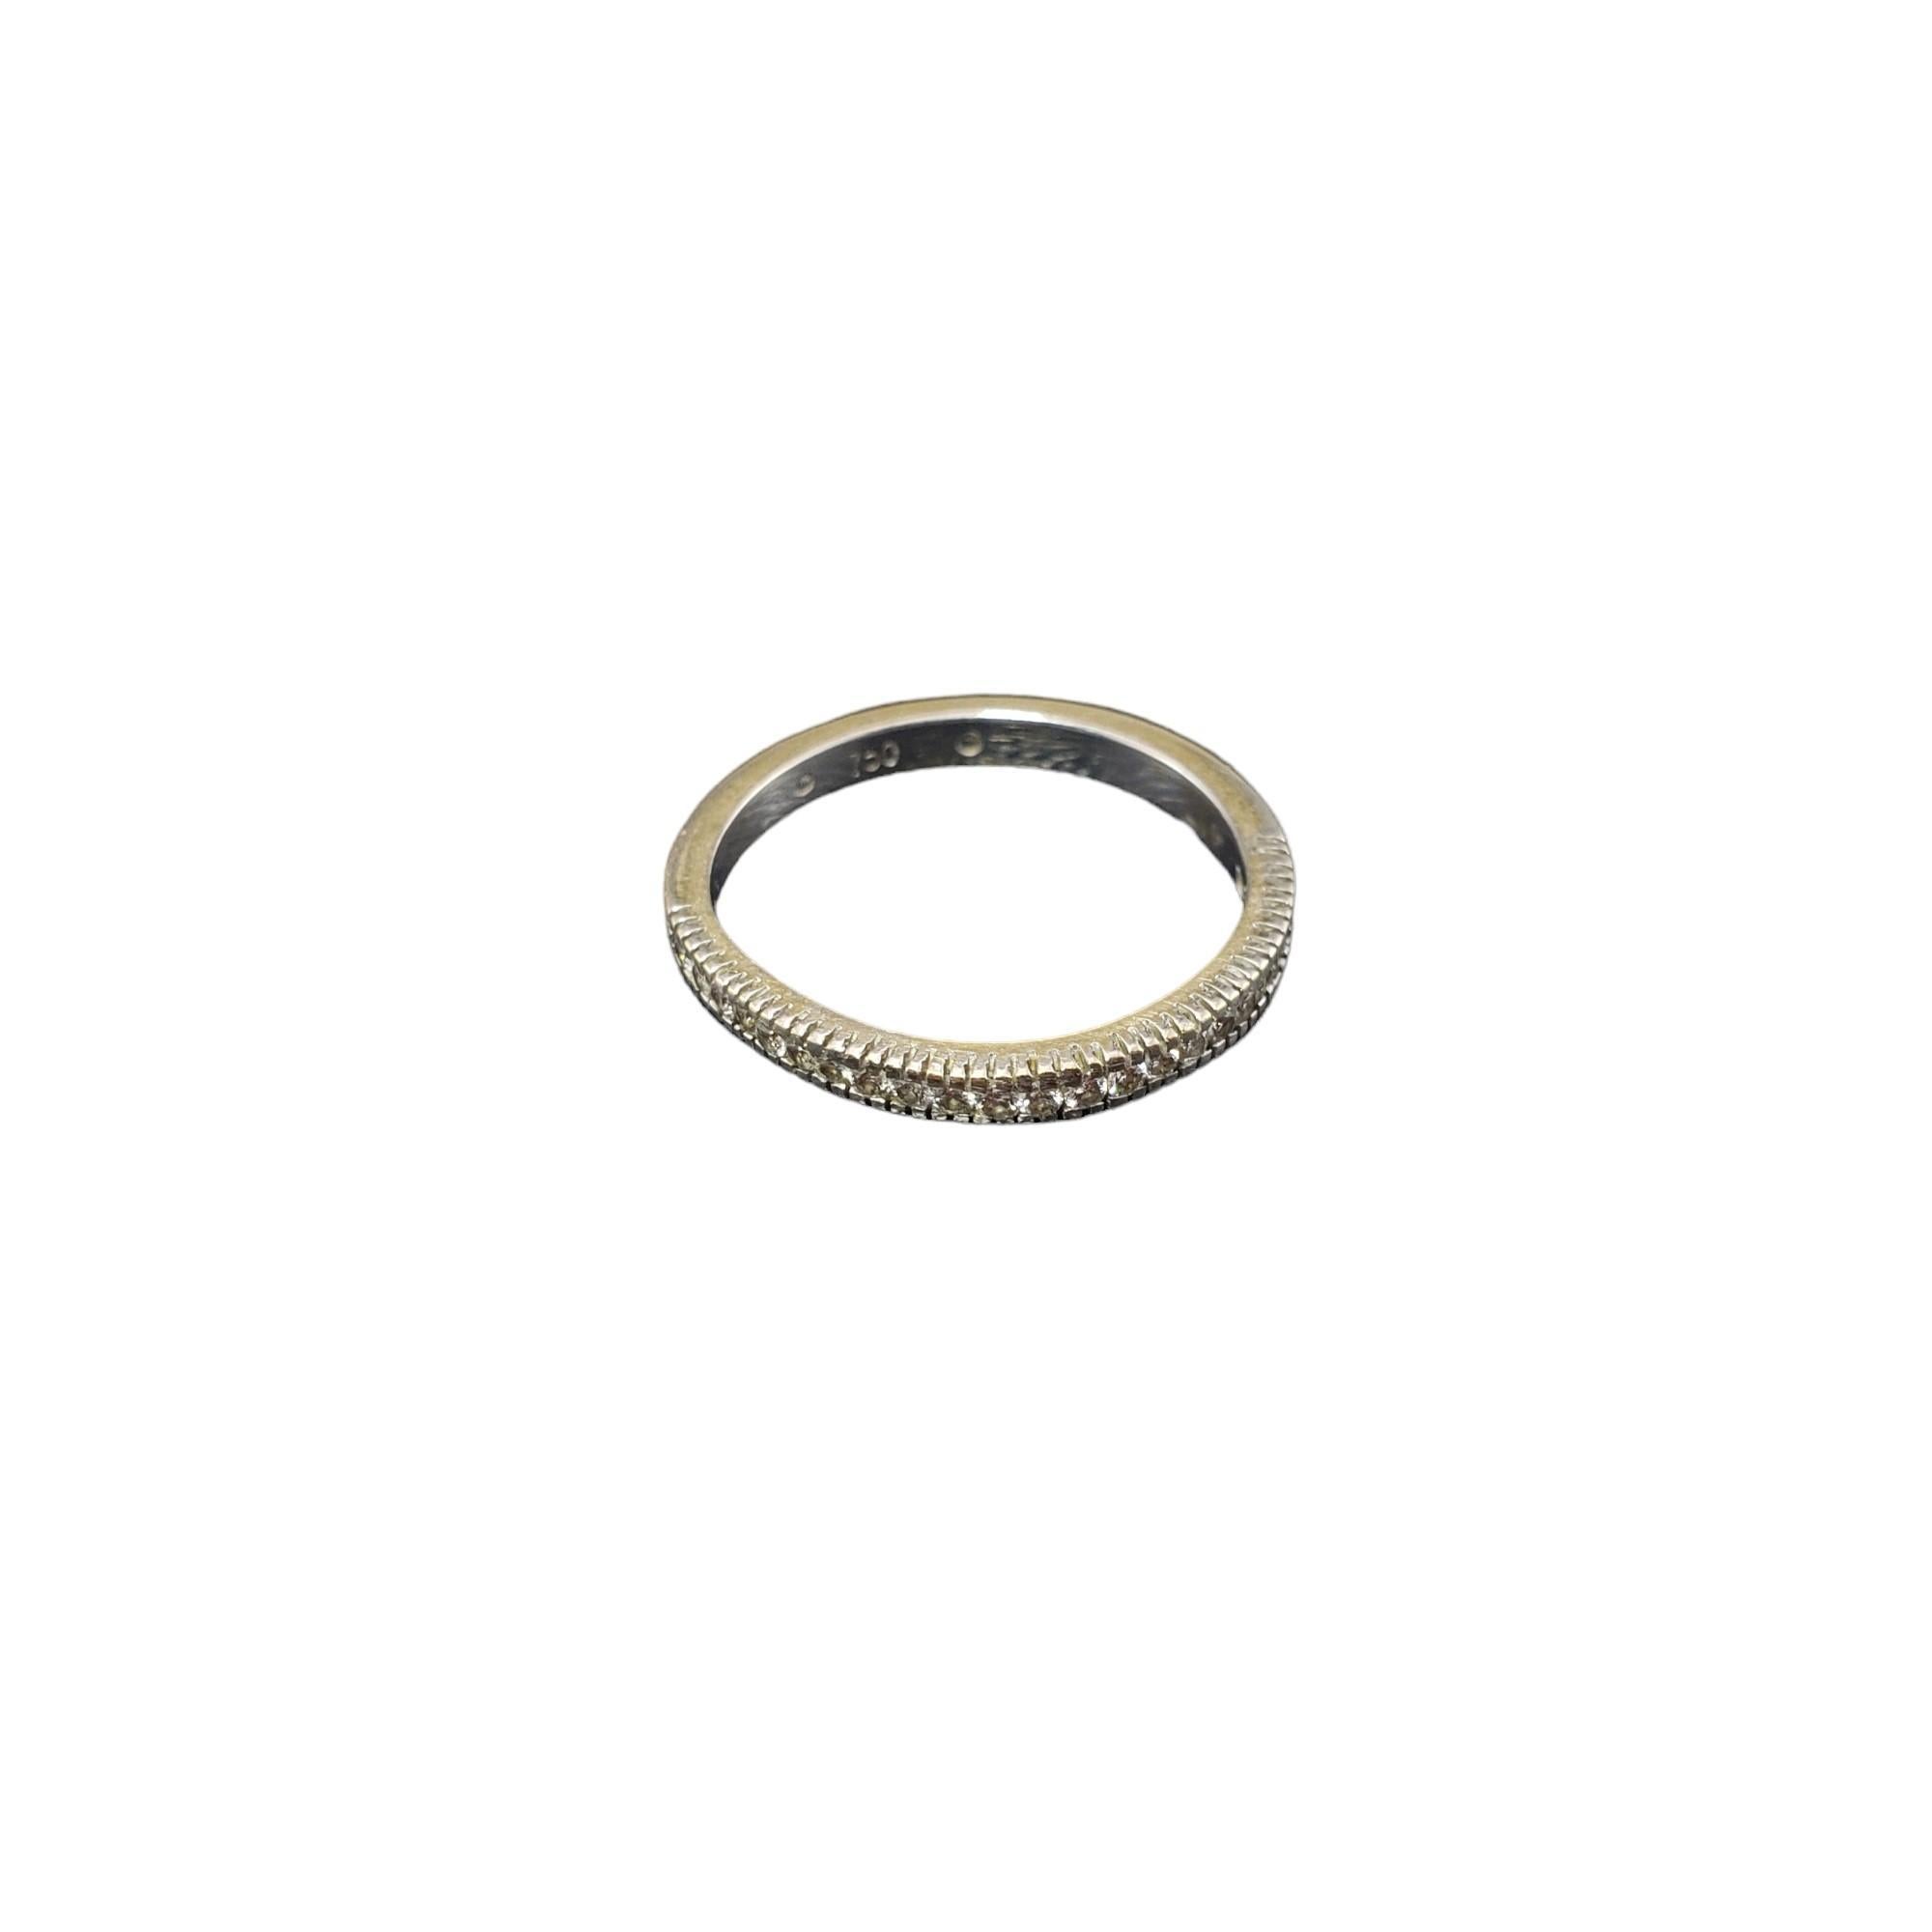 Vintage 18K White Gold Diamond Band Ring Größe 7-

Dieses funkelnde Band ist mit 23 runden Diamanten im Brillantschliff besetzt, die in wunderschön detailliertes 18-karätiges Weißgold gefasst sind.
Breite: 2 mm.

Ungefähres Gesamtgewicht der